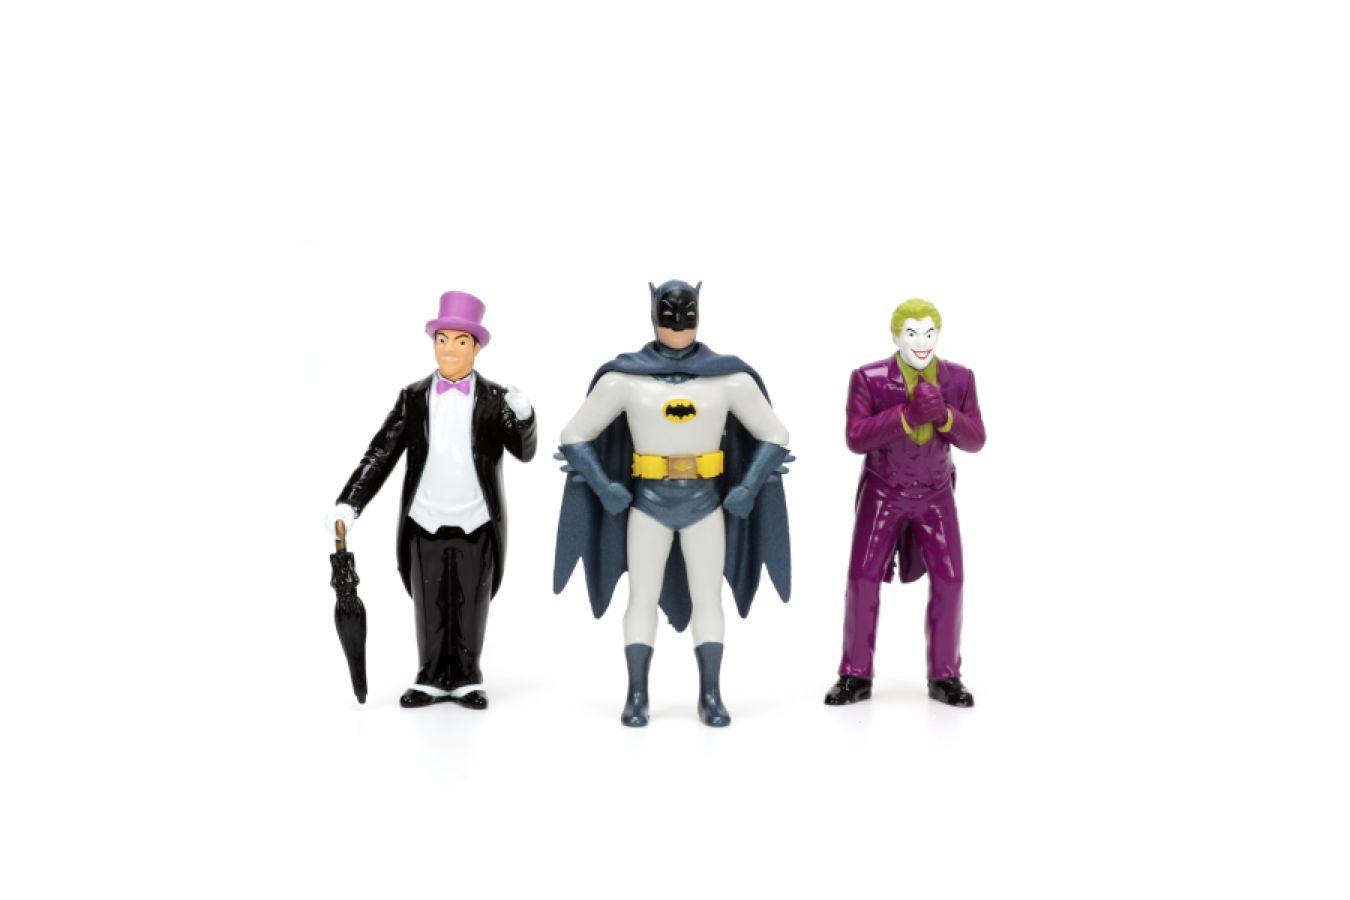 JAD33737 Batman (TV) - Classic Batmobile with 4 Figures 1:24 Scale Set - Jada Toys - Titan Pop Culture